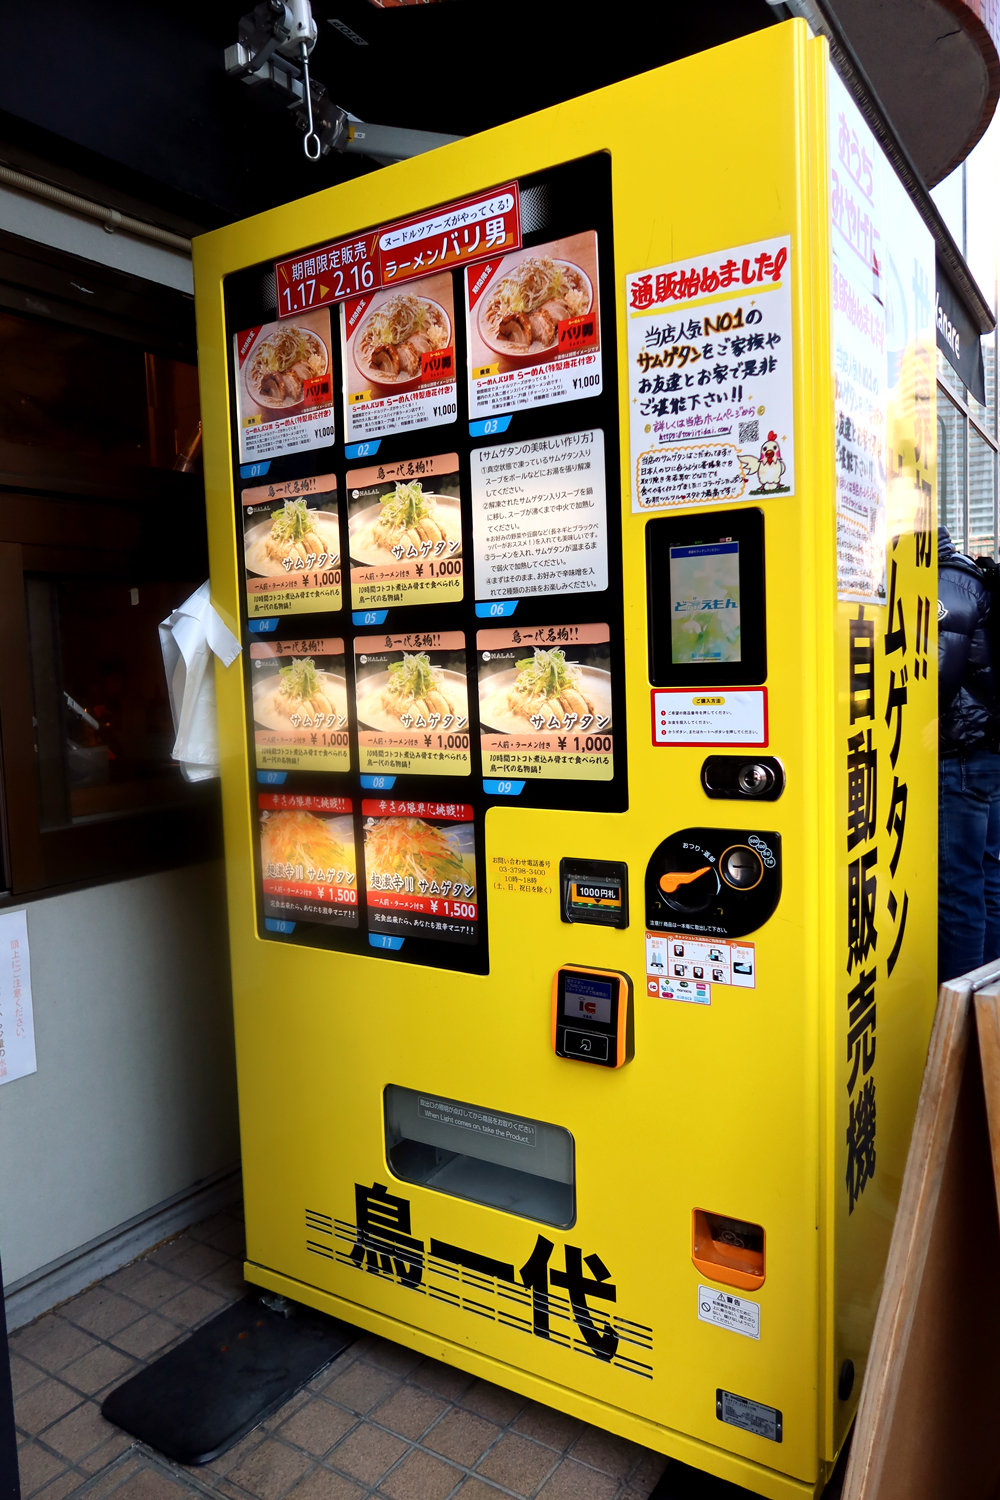 『鳥一代はなれ』（東京都・田町）の自販機に、期間限定で『らーめん バリ男』の「らーめん」が売られていた。思わずポチッ